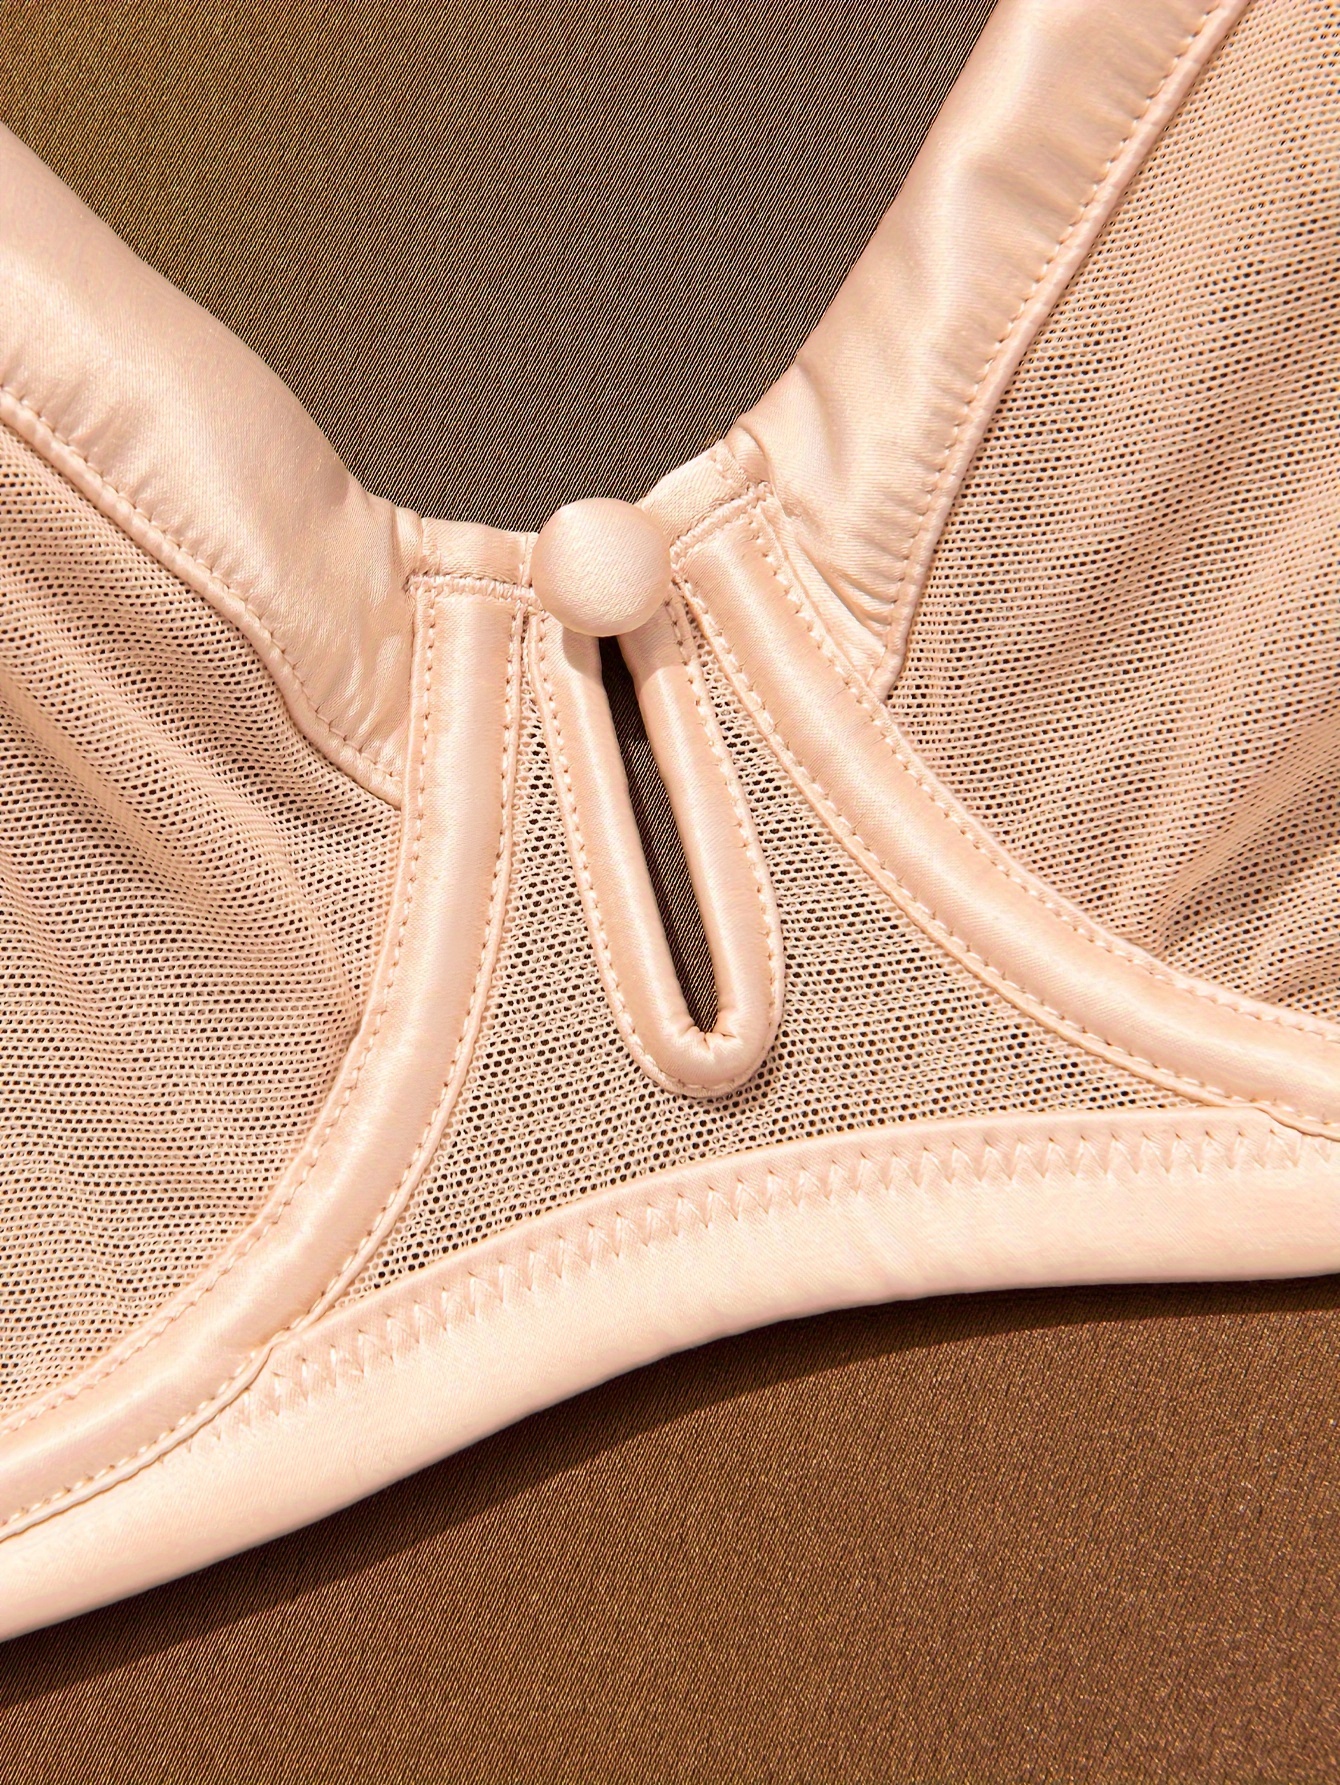 Deyllo Women's Sheer Mesh Lace Unlined Underwire Bra Sexy See-Through Demi  Bralette?Beige 34DD 